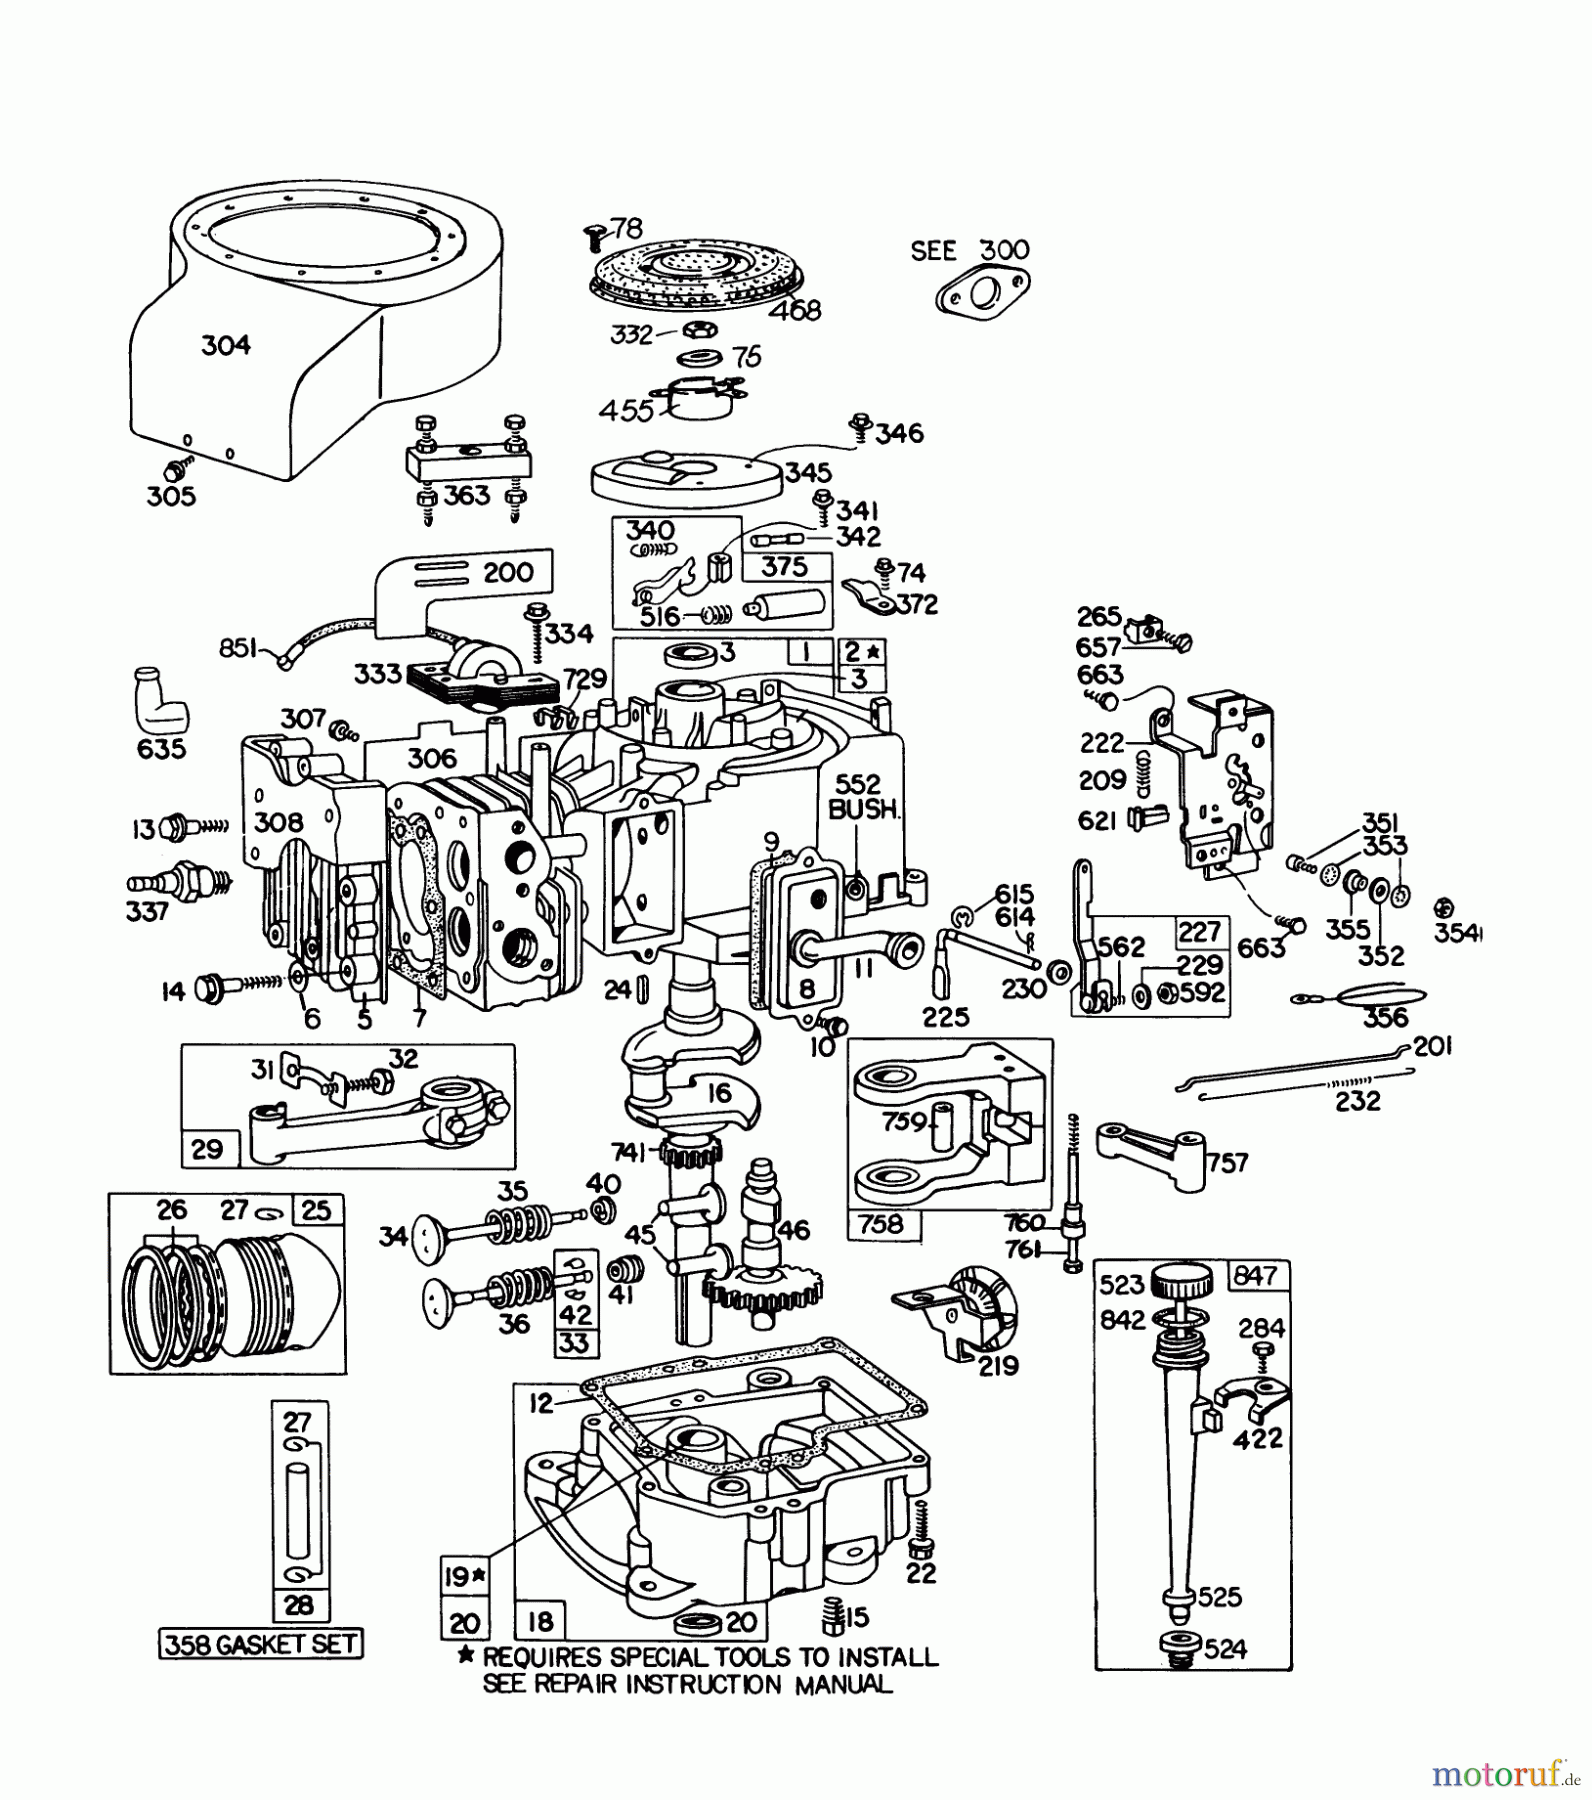  Toro Neu Mowers, Lawn & Garden Tractor Seite 1 57300 (8-32) - Toro 8-32 Front Engine Rider, 1978 (8000001-8999999) ENGINE BRIGGS & STRATTON MODEL 191707-5633-01 (MODEL 57300)